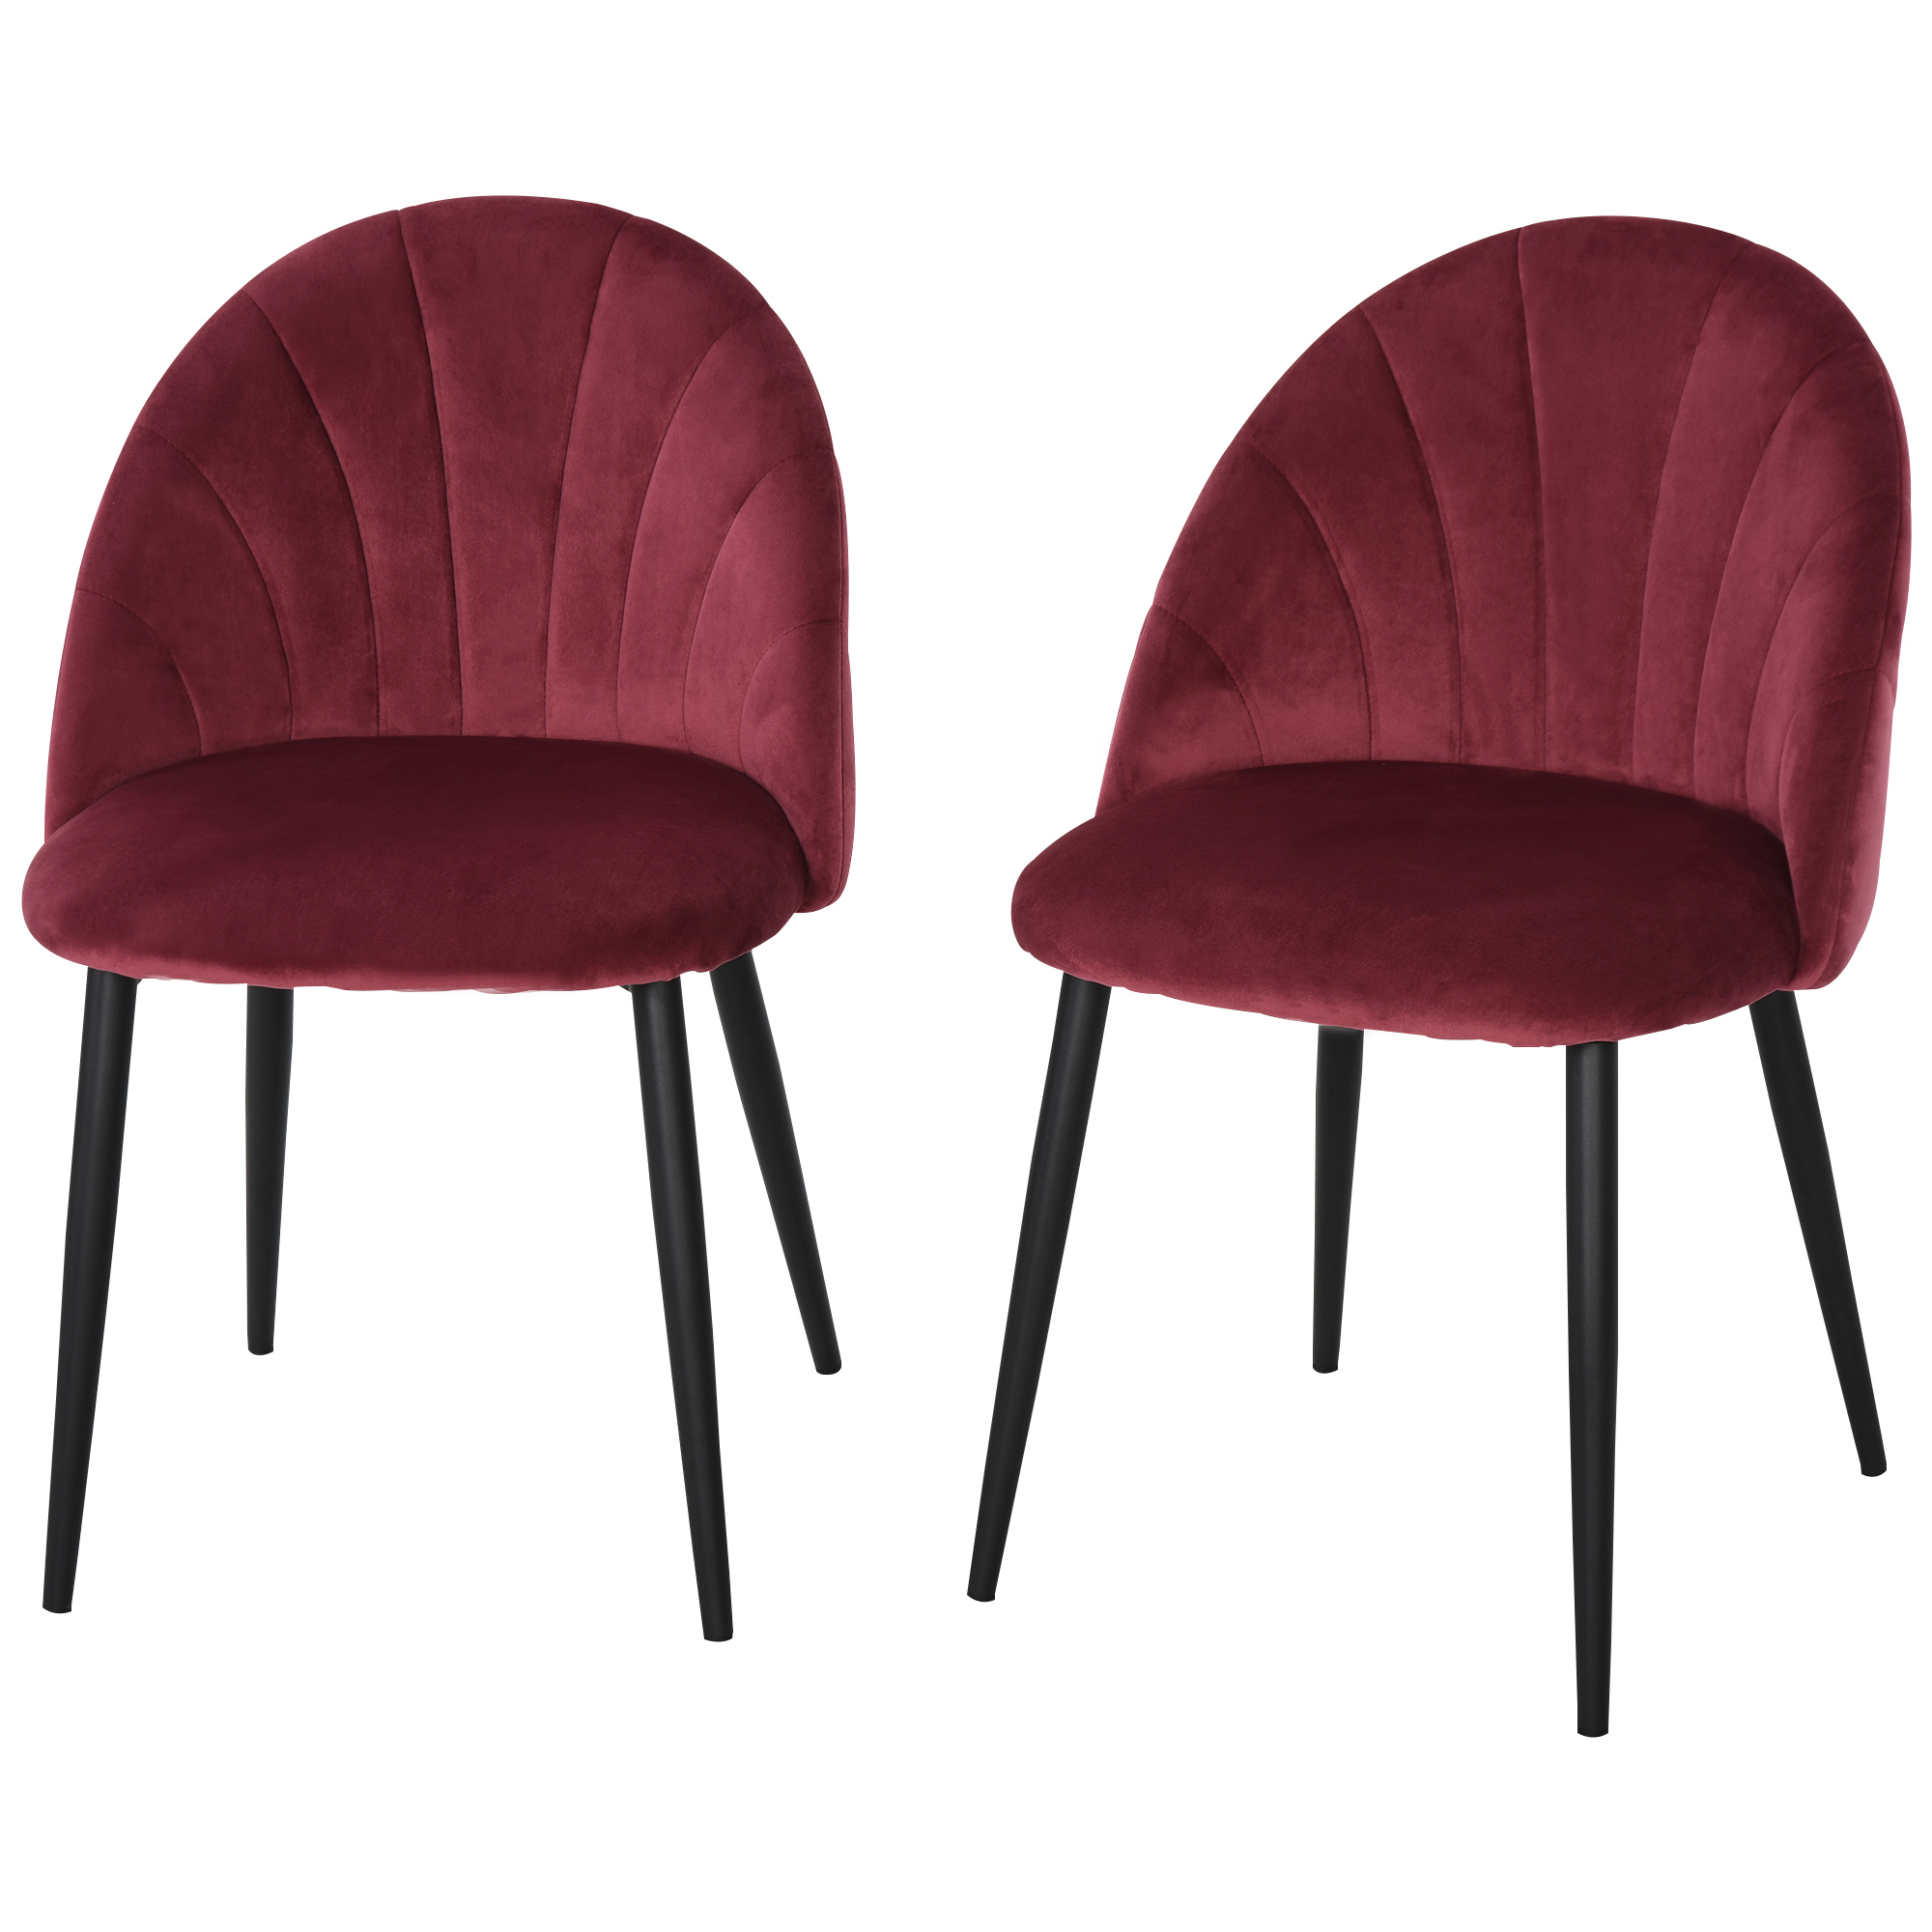 Σετ Homcom με 2 επικαλυμμένες καρέκλες τραπεζαρίας με σκανδιναβικό σχέδιο σε μέταλλο και βελούδο Βουργουνδίας